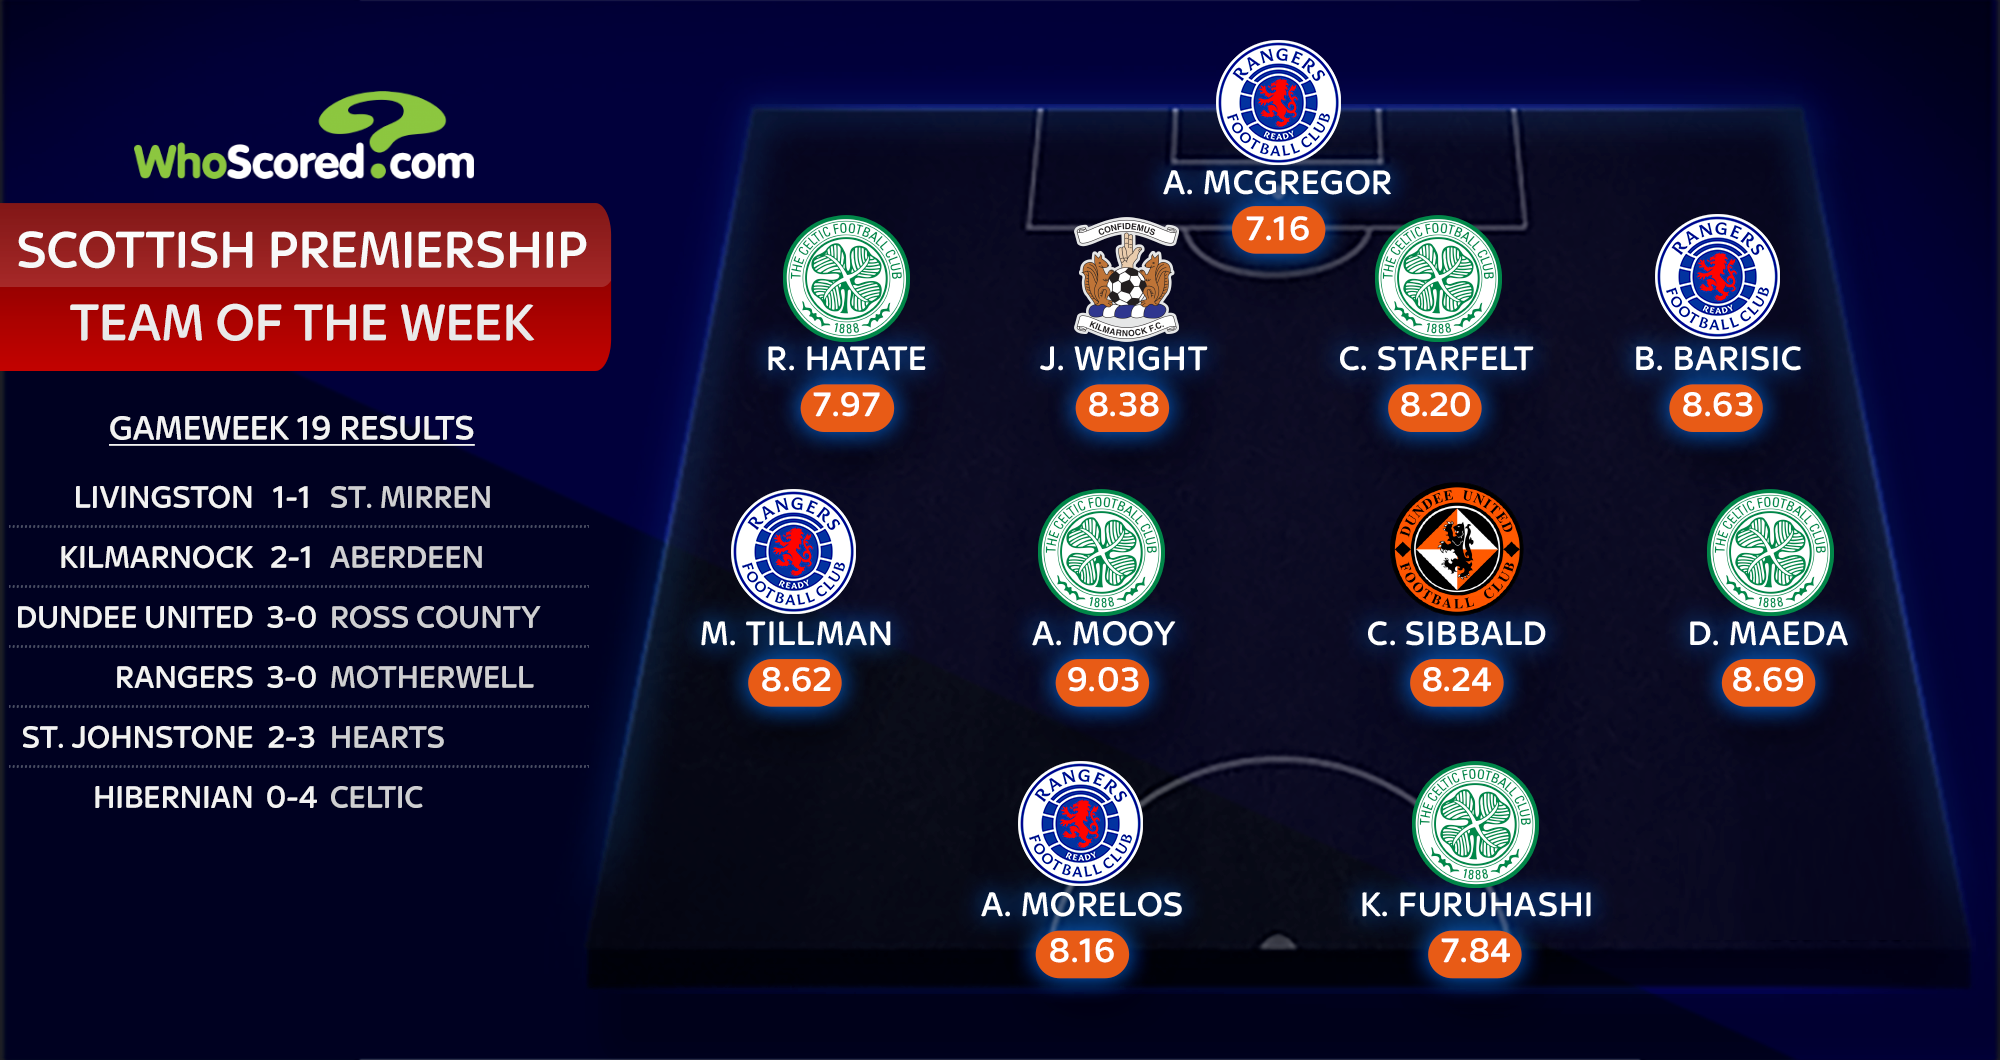 Scottish Premiership: Celtic, Rangers, Dundee United dan Kilamarnock tampil di Team of the Week |  Berita Sepak Bola